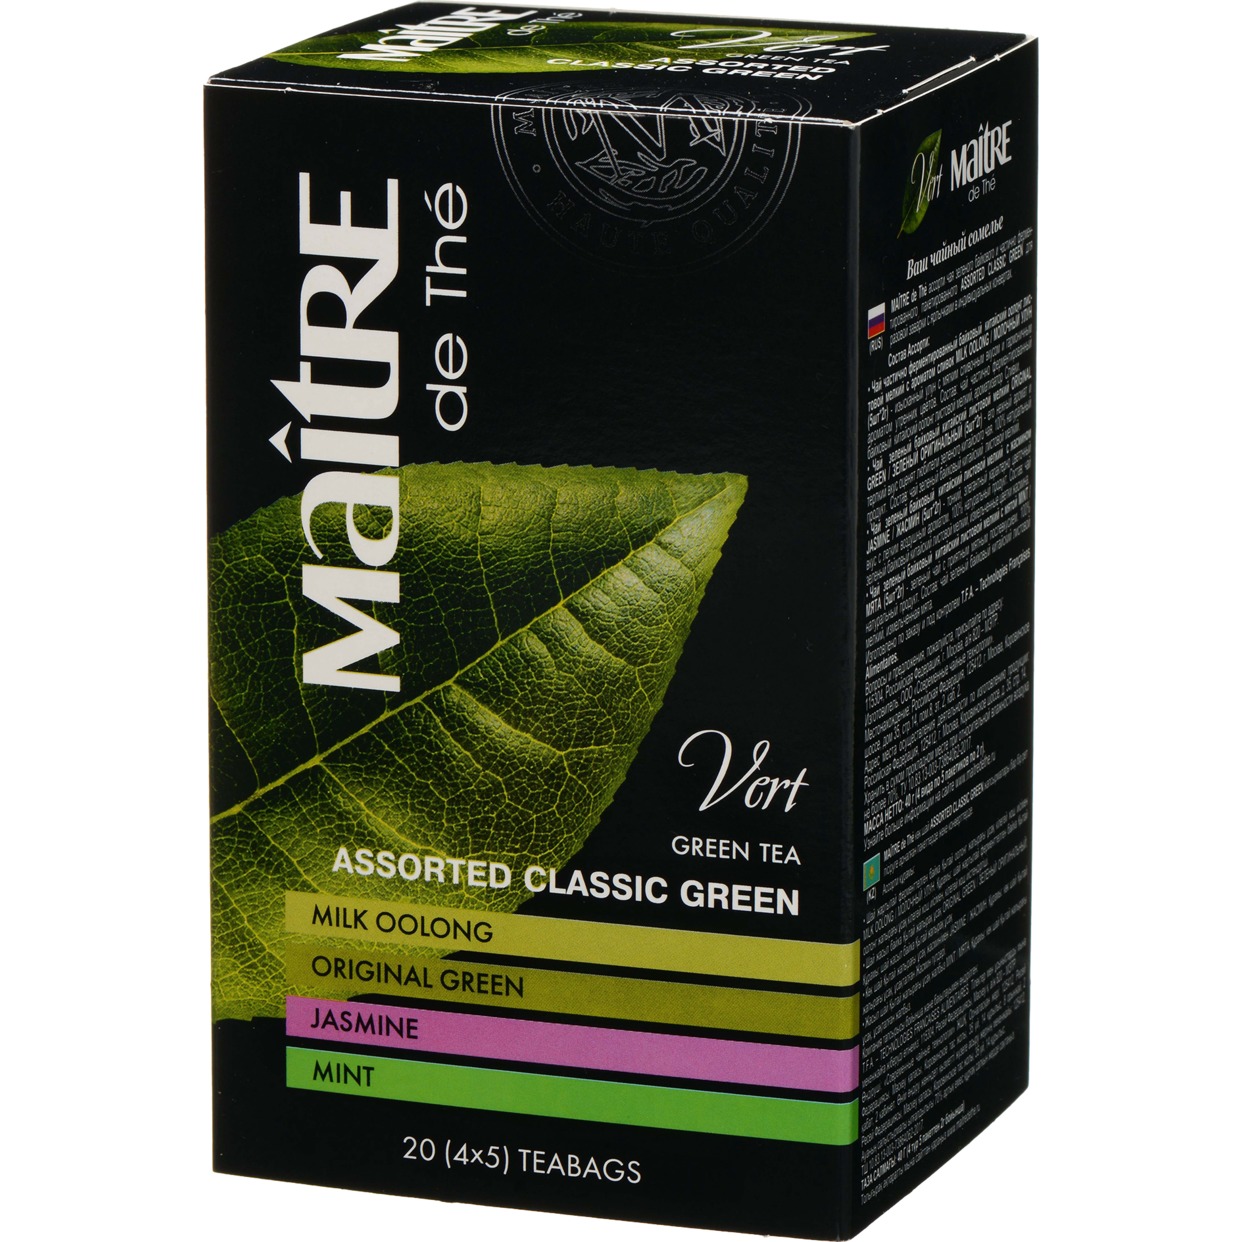 Ассорти чая зелёного байхового и частично ферментированного пакетированного ASSORTED CLASSIC GREEN "Maitre de the" 20пак*2г 40г. по акции в Пятерочке